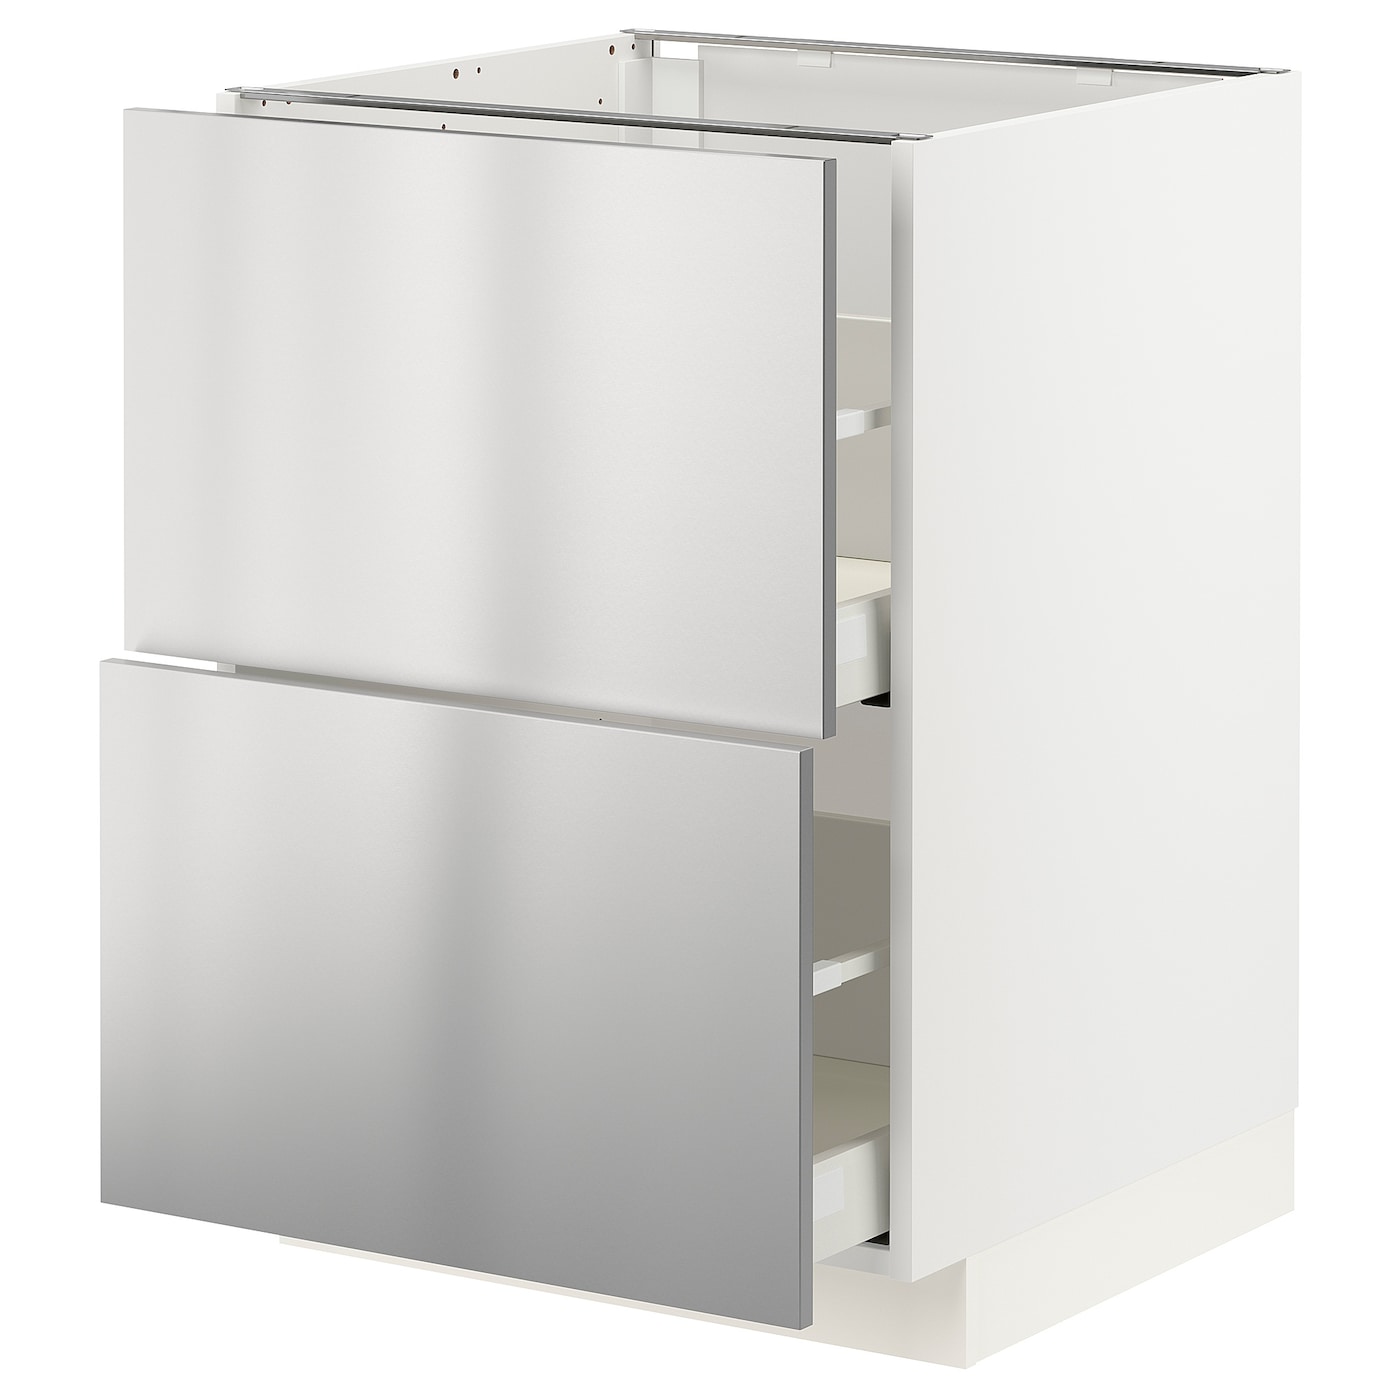 Напольный кухонный шкаф  - IKEA METOD MAXIMERA, 88x61,6x60см, белый/светло-серый, МЕТОД МАКСИМЕРА ИКЕА